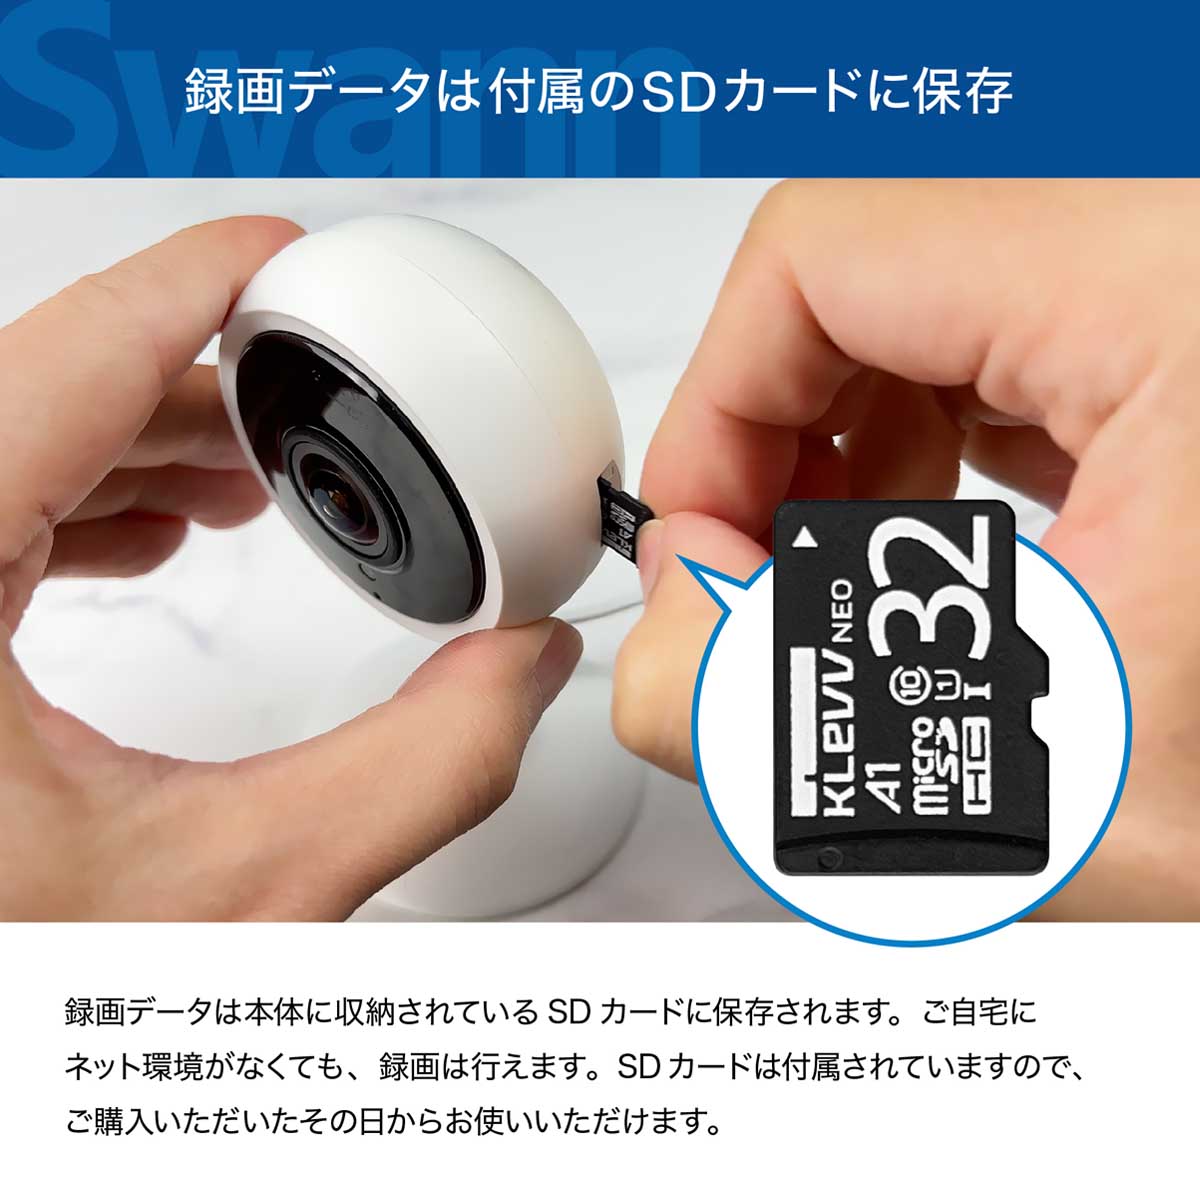 【楽天市場】Swann スワン セキュリティ カメラ 自動追跡 フルHD 